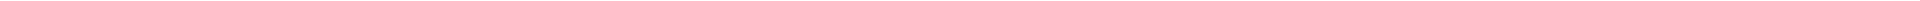 Лечение кариеса зубов - цены в Астане, Алматы, Атырау, Усть-Каменогорск, Уральск, Кокшетау в Казахстане, фото 22